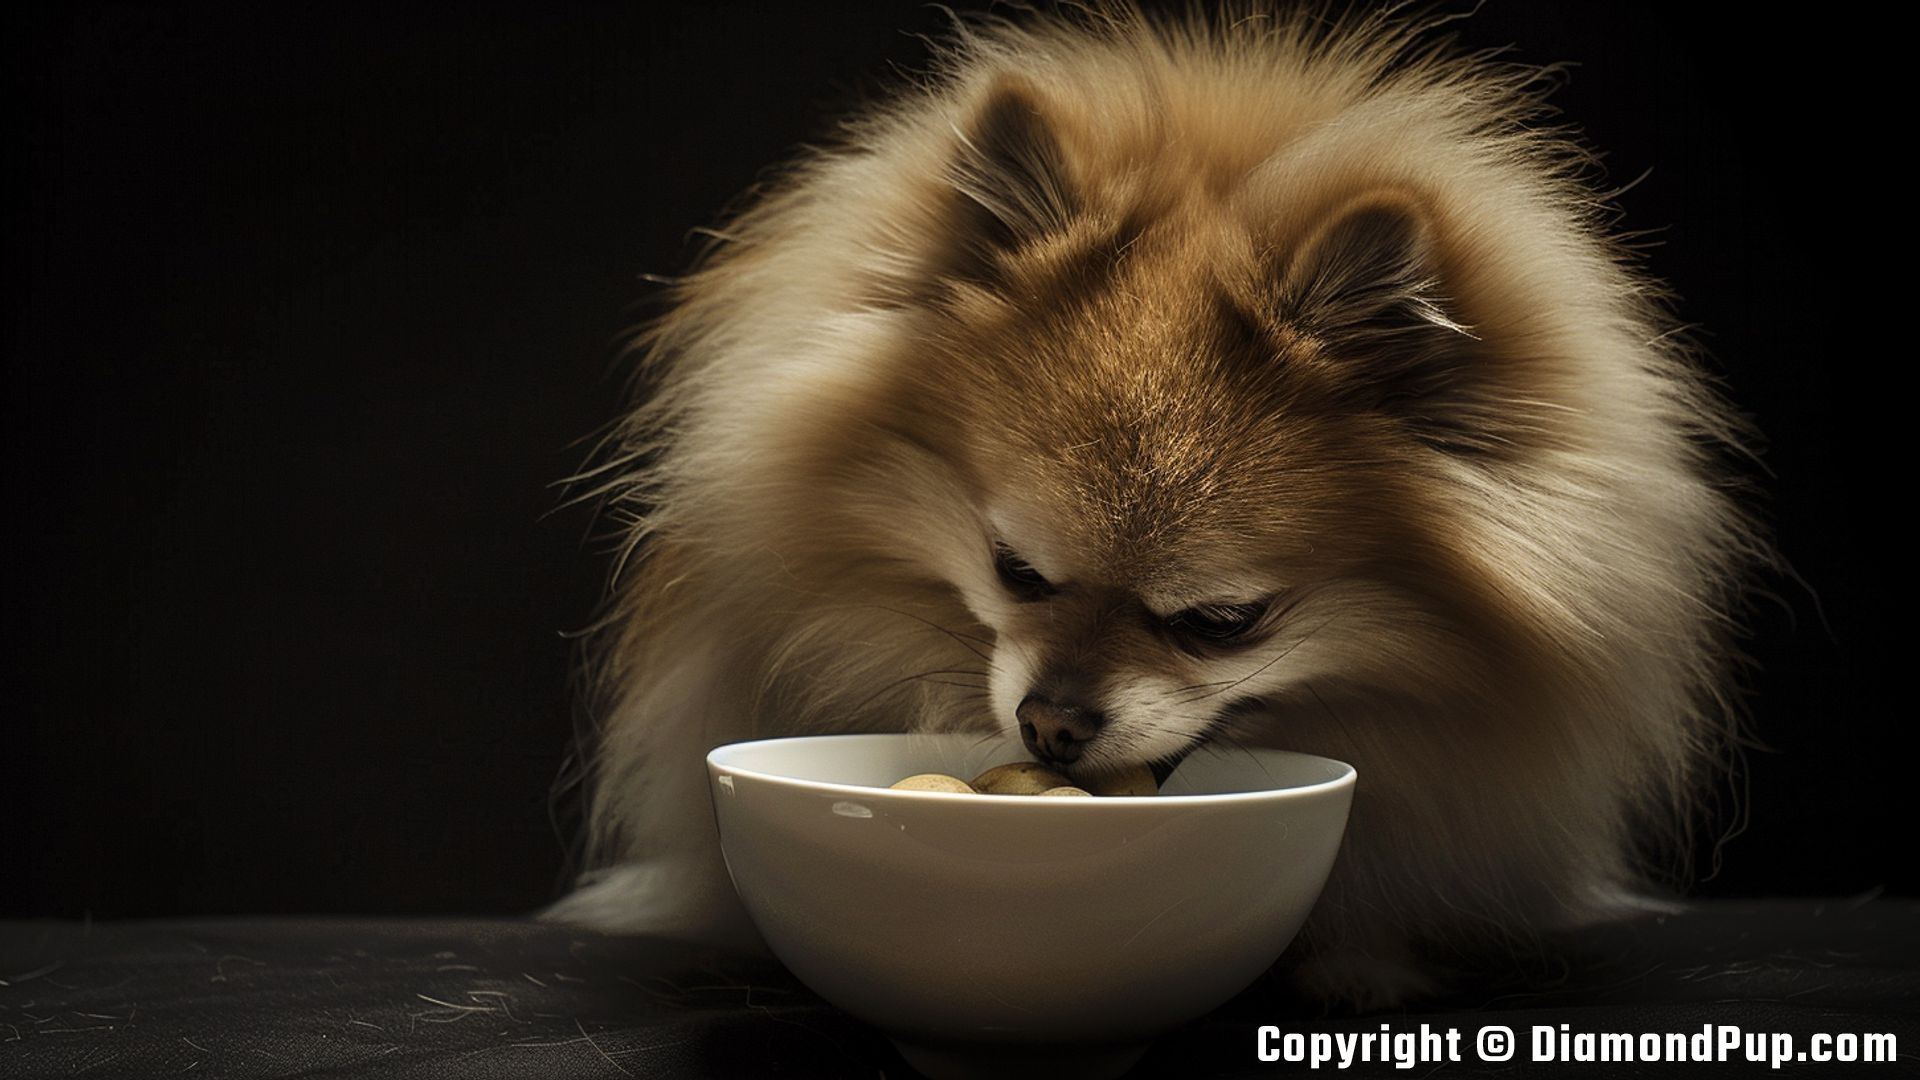 Photograph of an Adorable Pomeranian Eating Potato